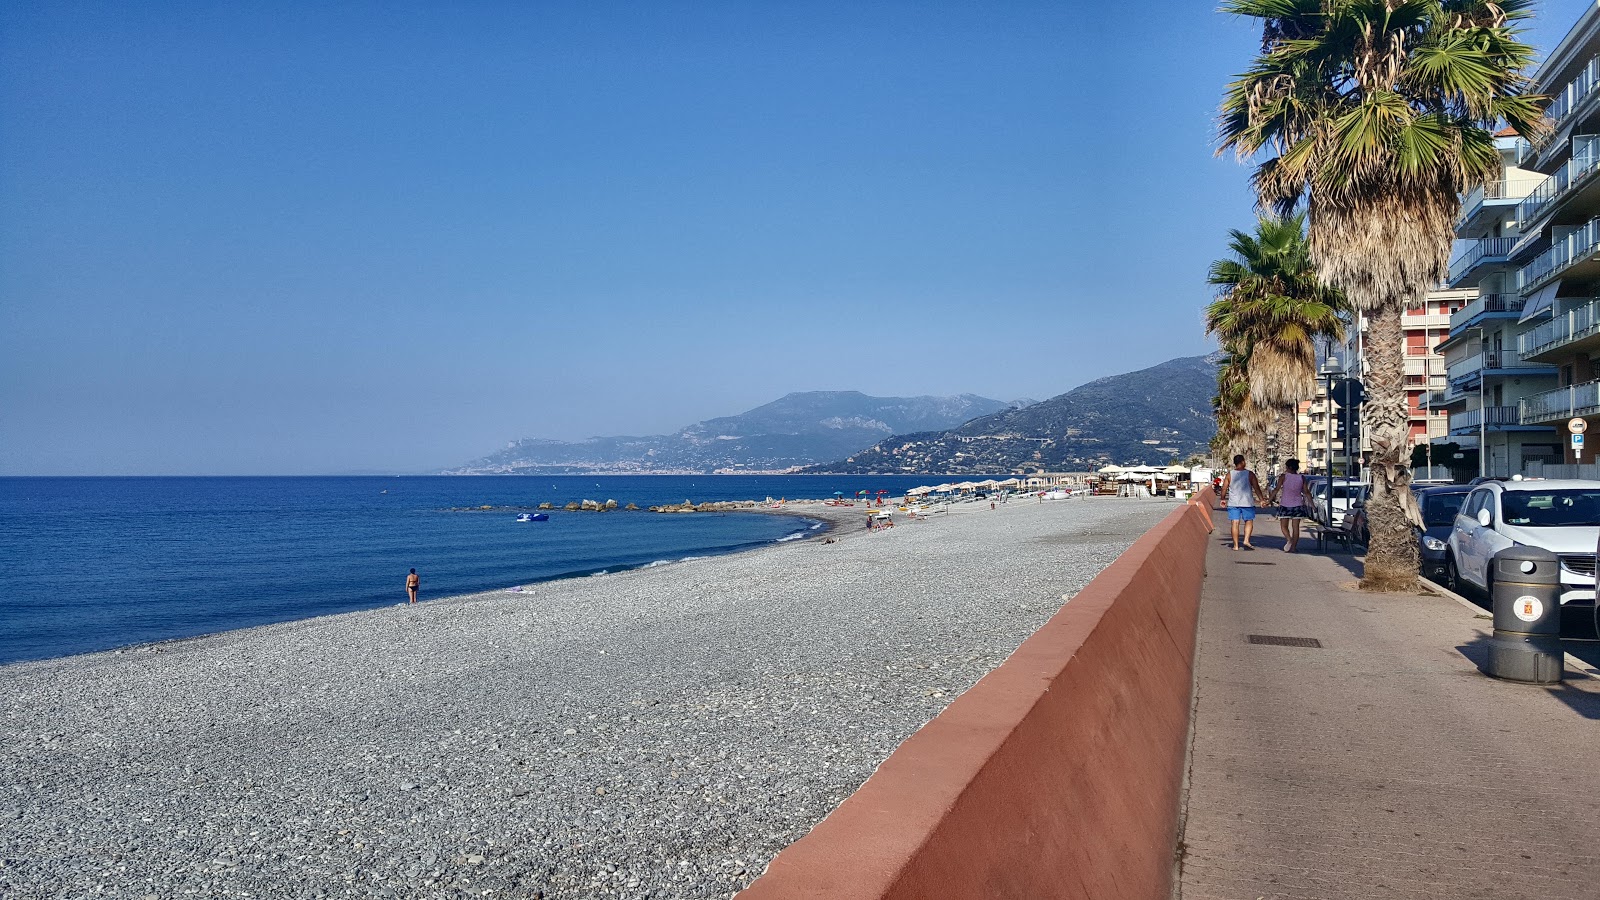 Foto af Spiaggia Ventimiglia med store bugter